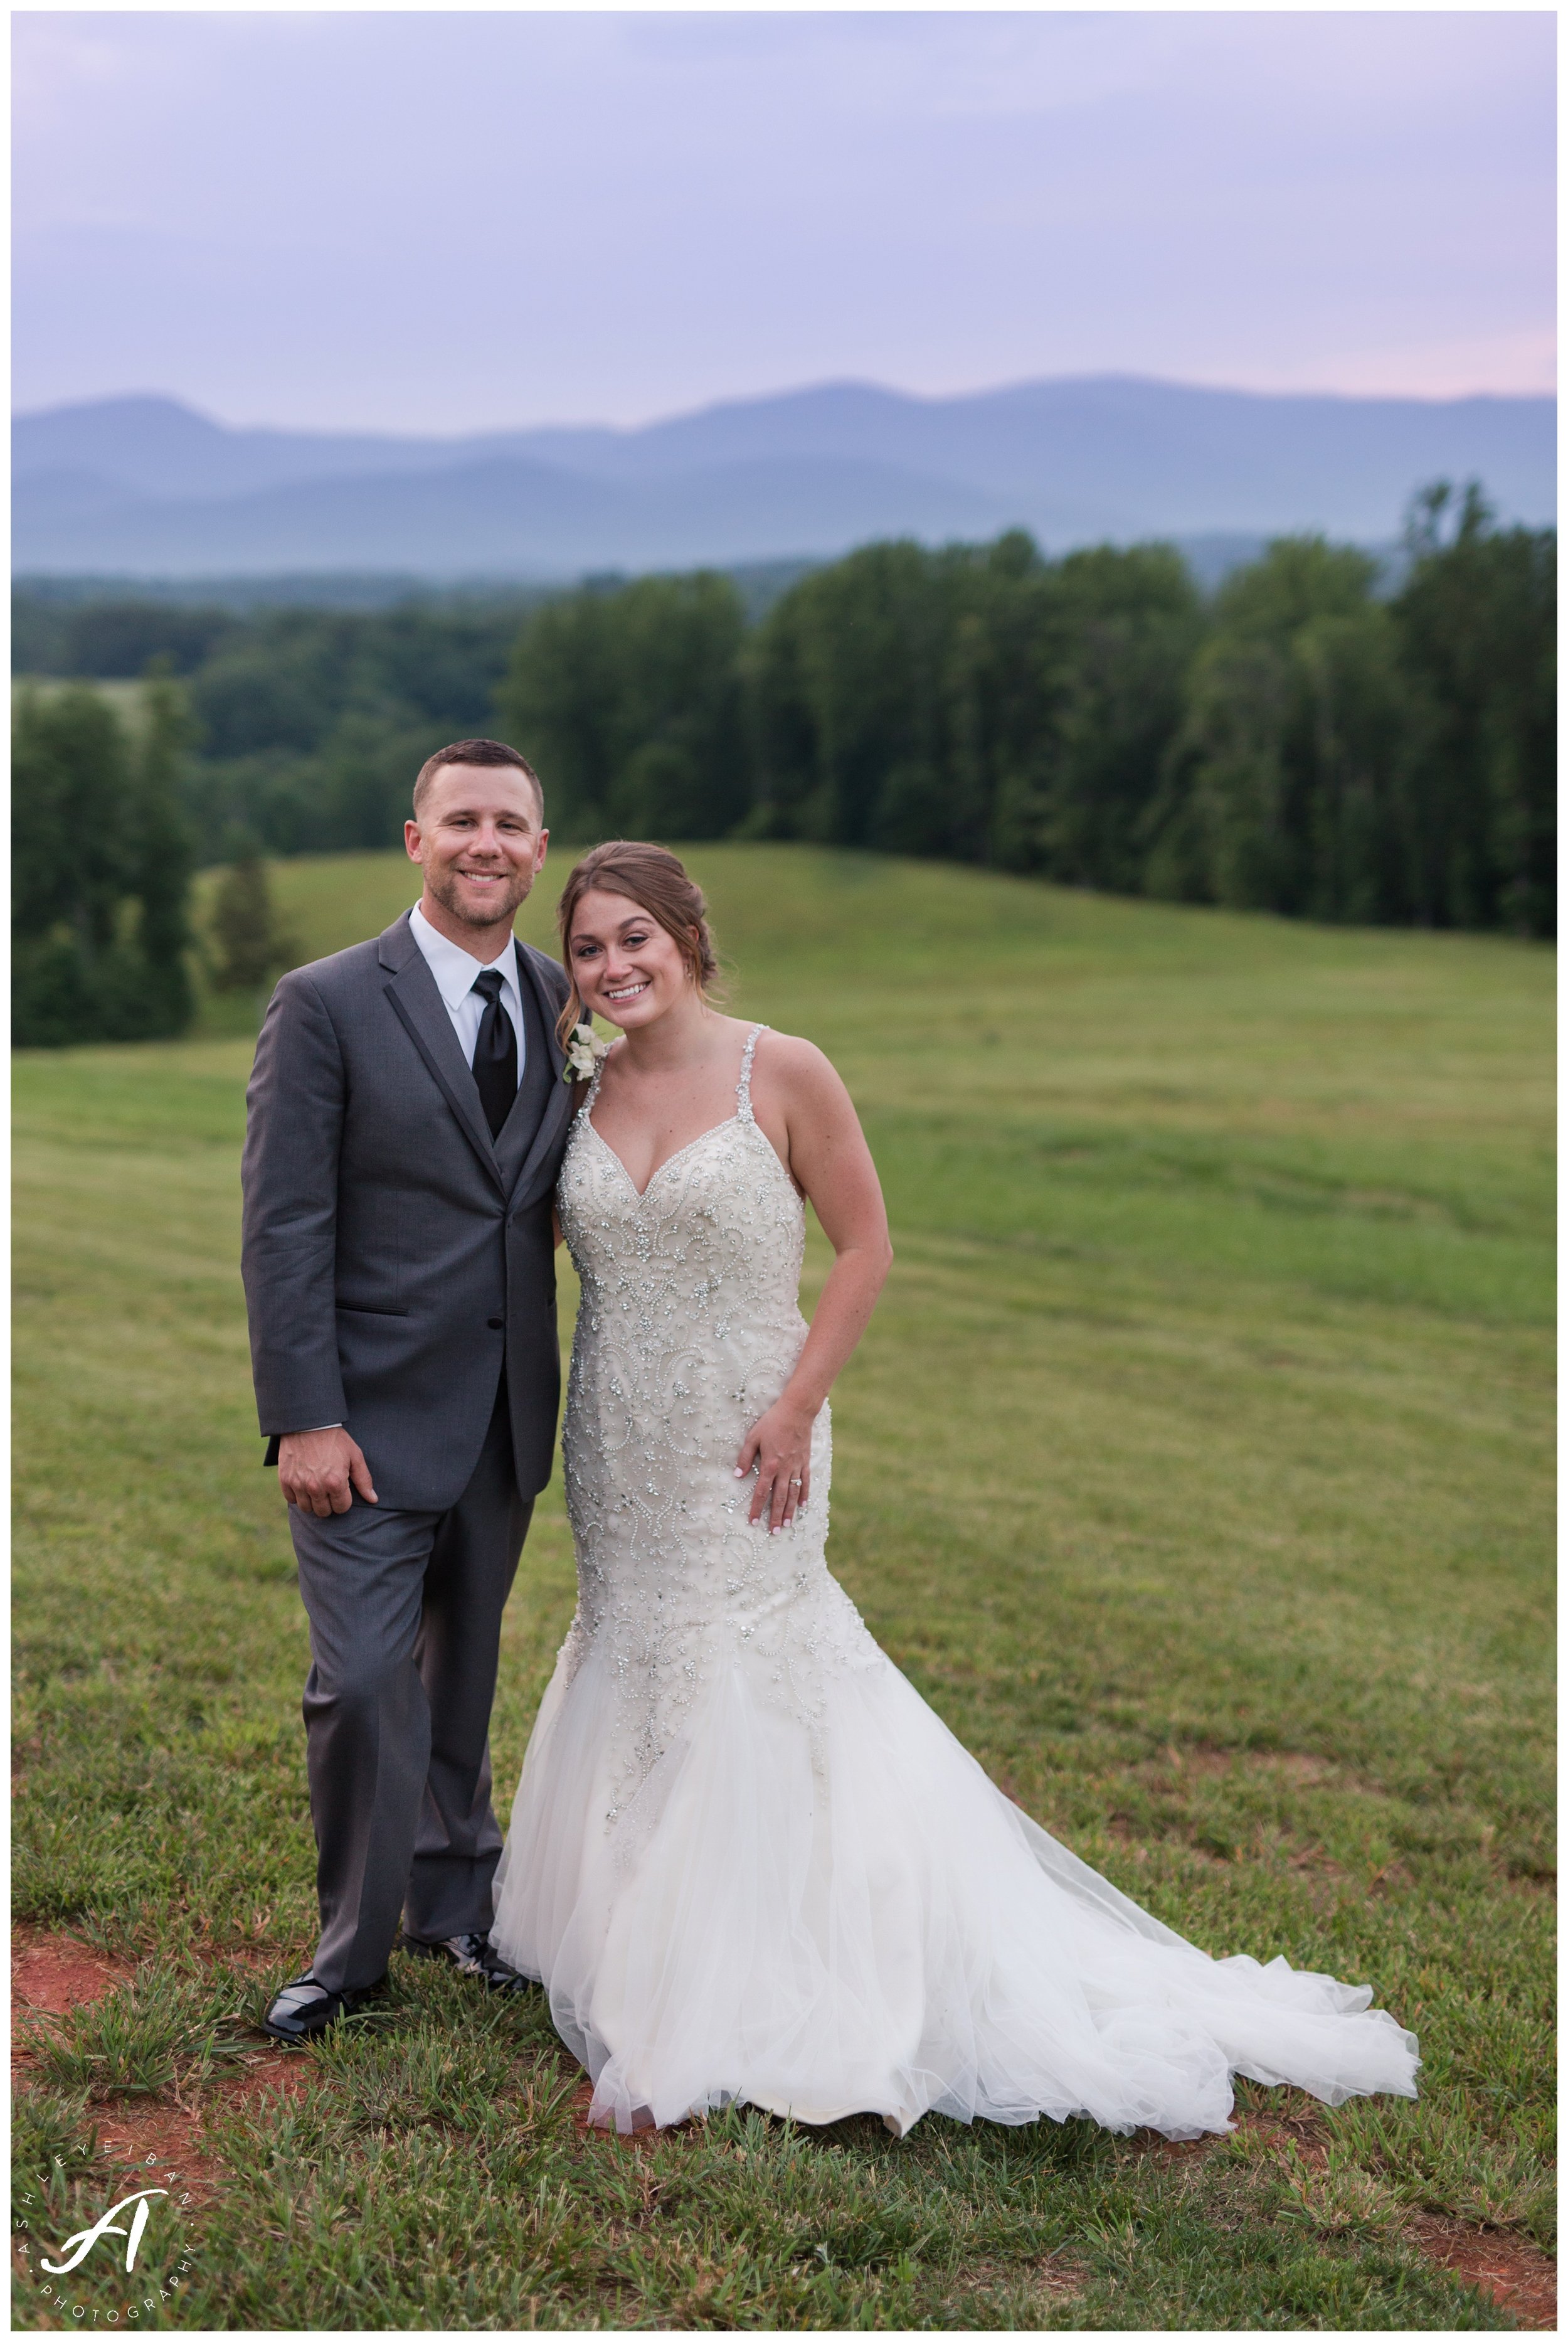 Mountain View Wedding at Sierra Vista in Central Virginia || Ashley Eiban Photography || www.ashleyeiban.com